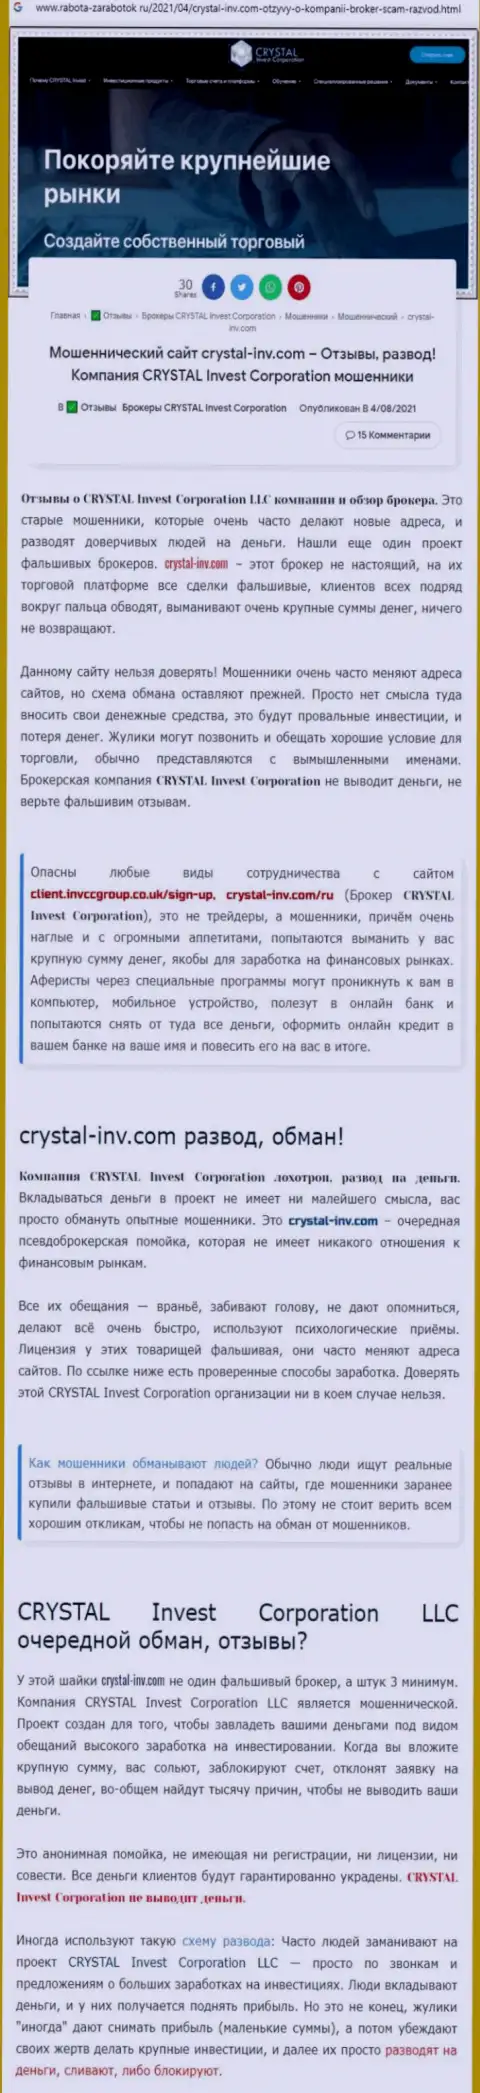 Материал, выводящий на чистую воду контору Crystal Invest, который взят с информационного ресурса с обзорами разных контор